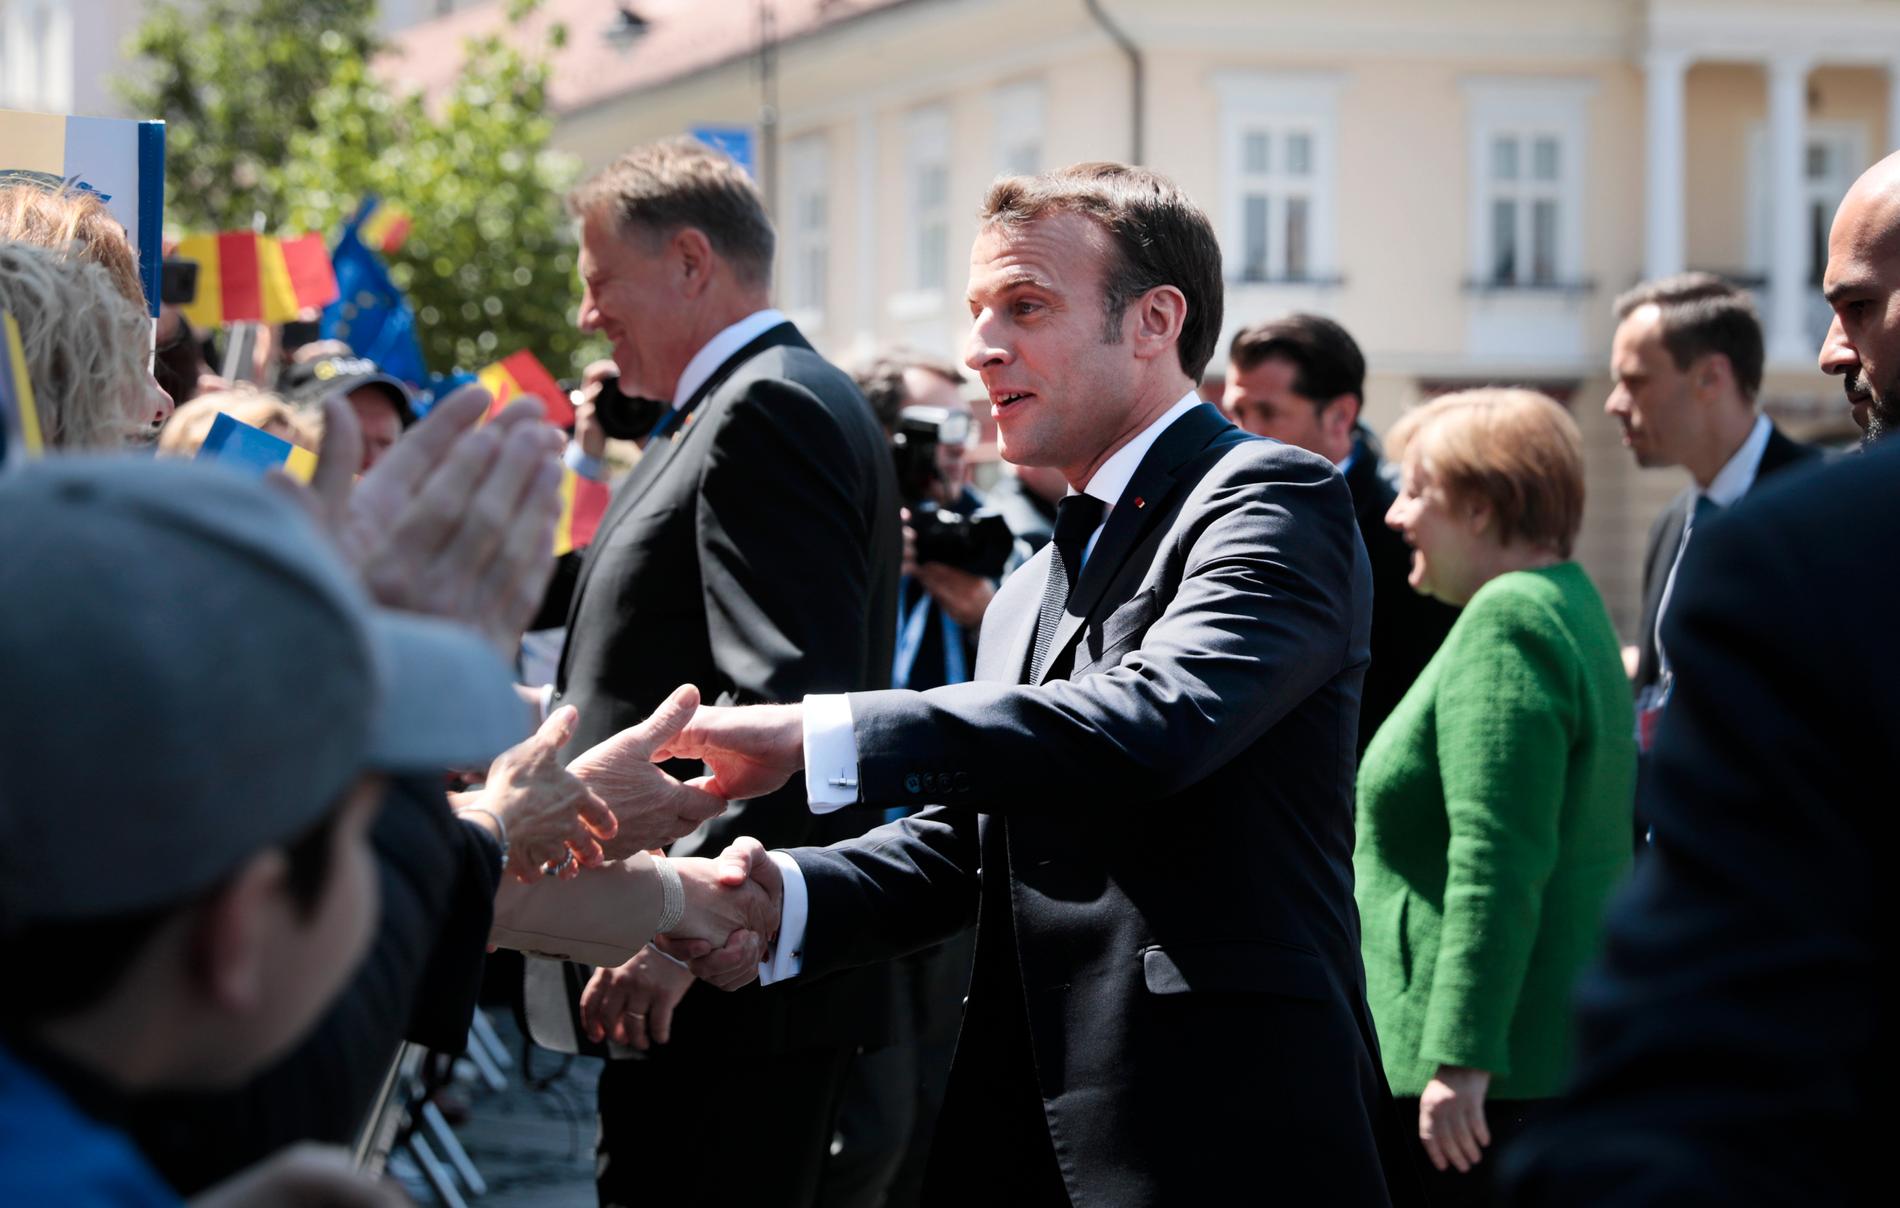 Frankrikes president Emmanuel Macron hälsar på åskådarna utanför toppmötet i Sibiu.